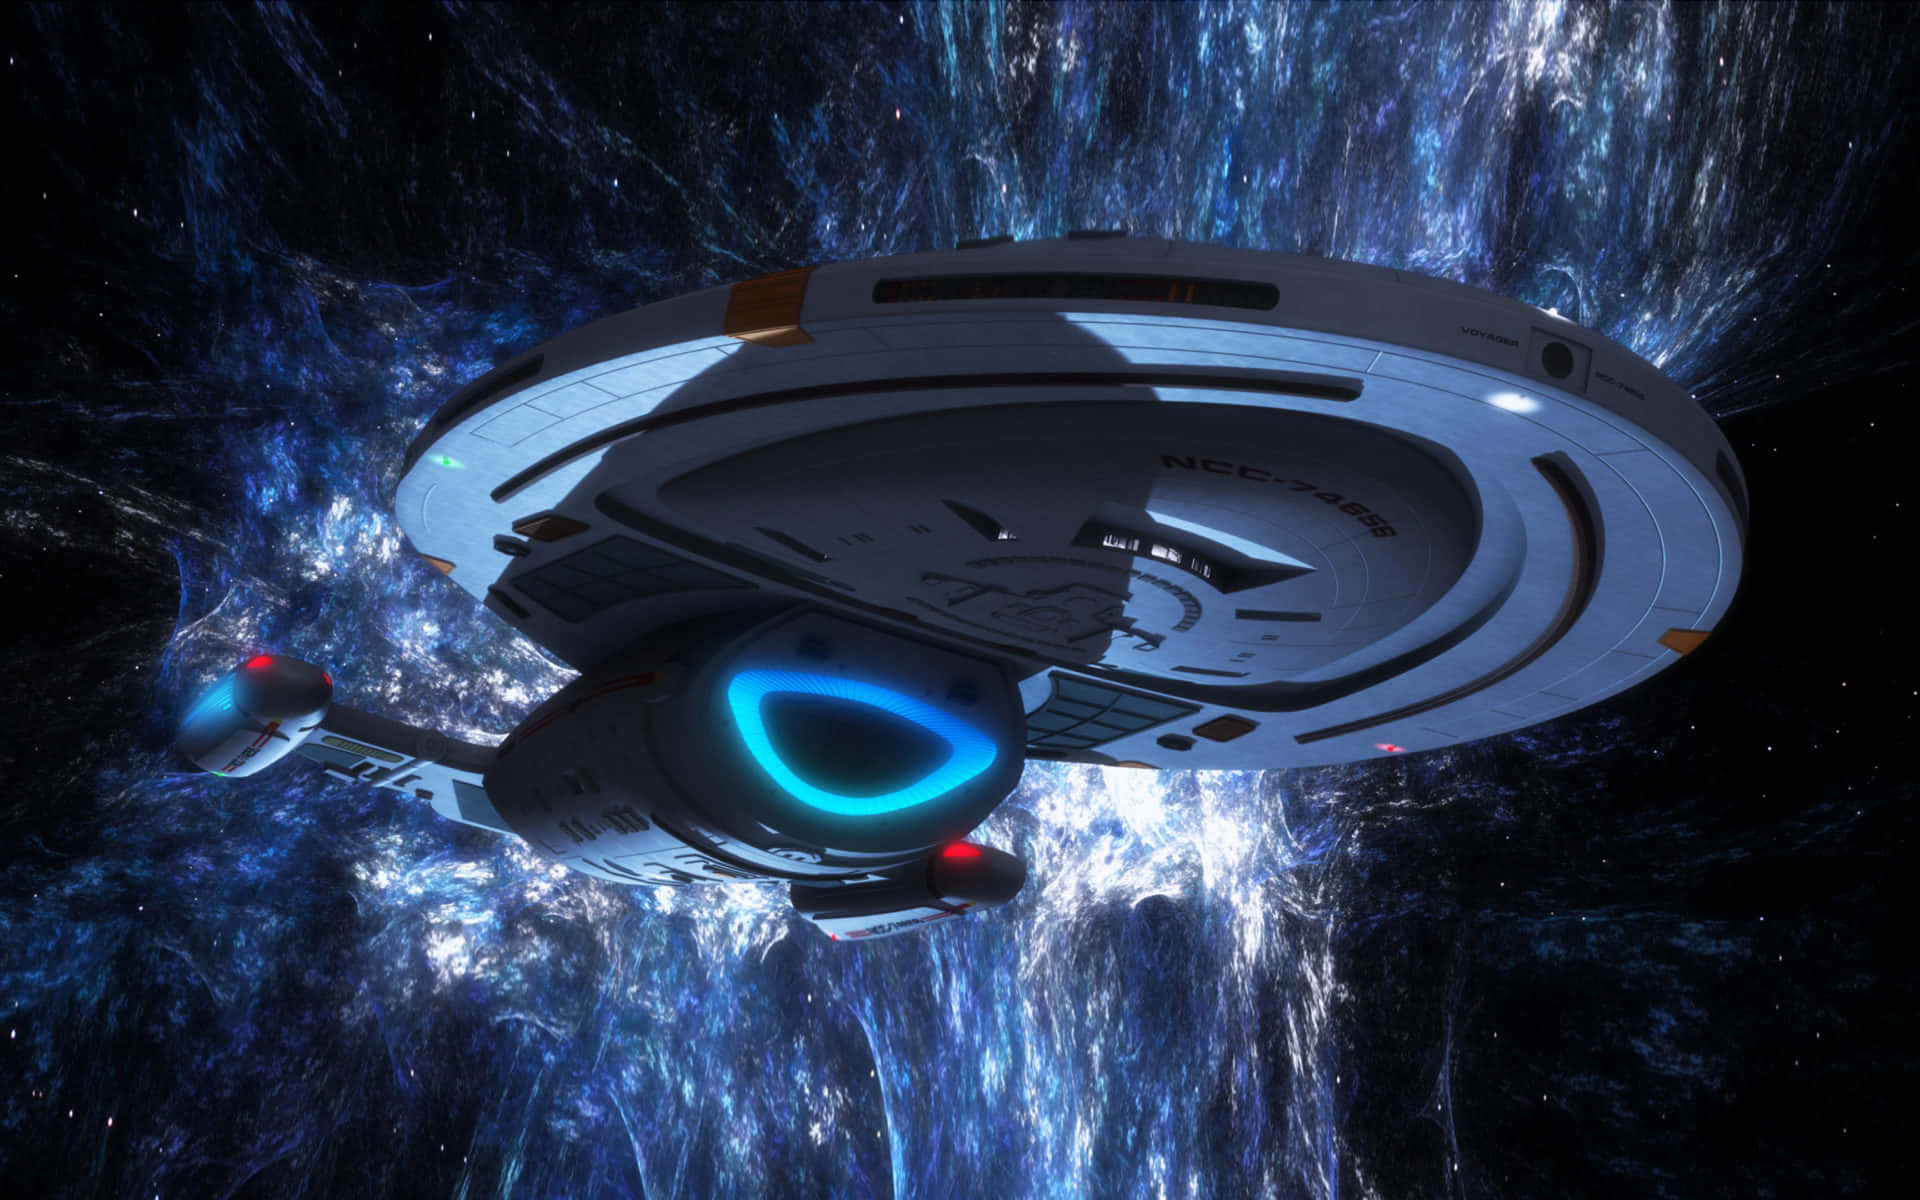 Tauchensie Mit Zoom In Das Star Trek-universum Ein